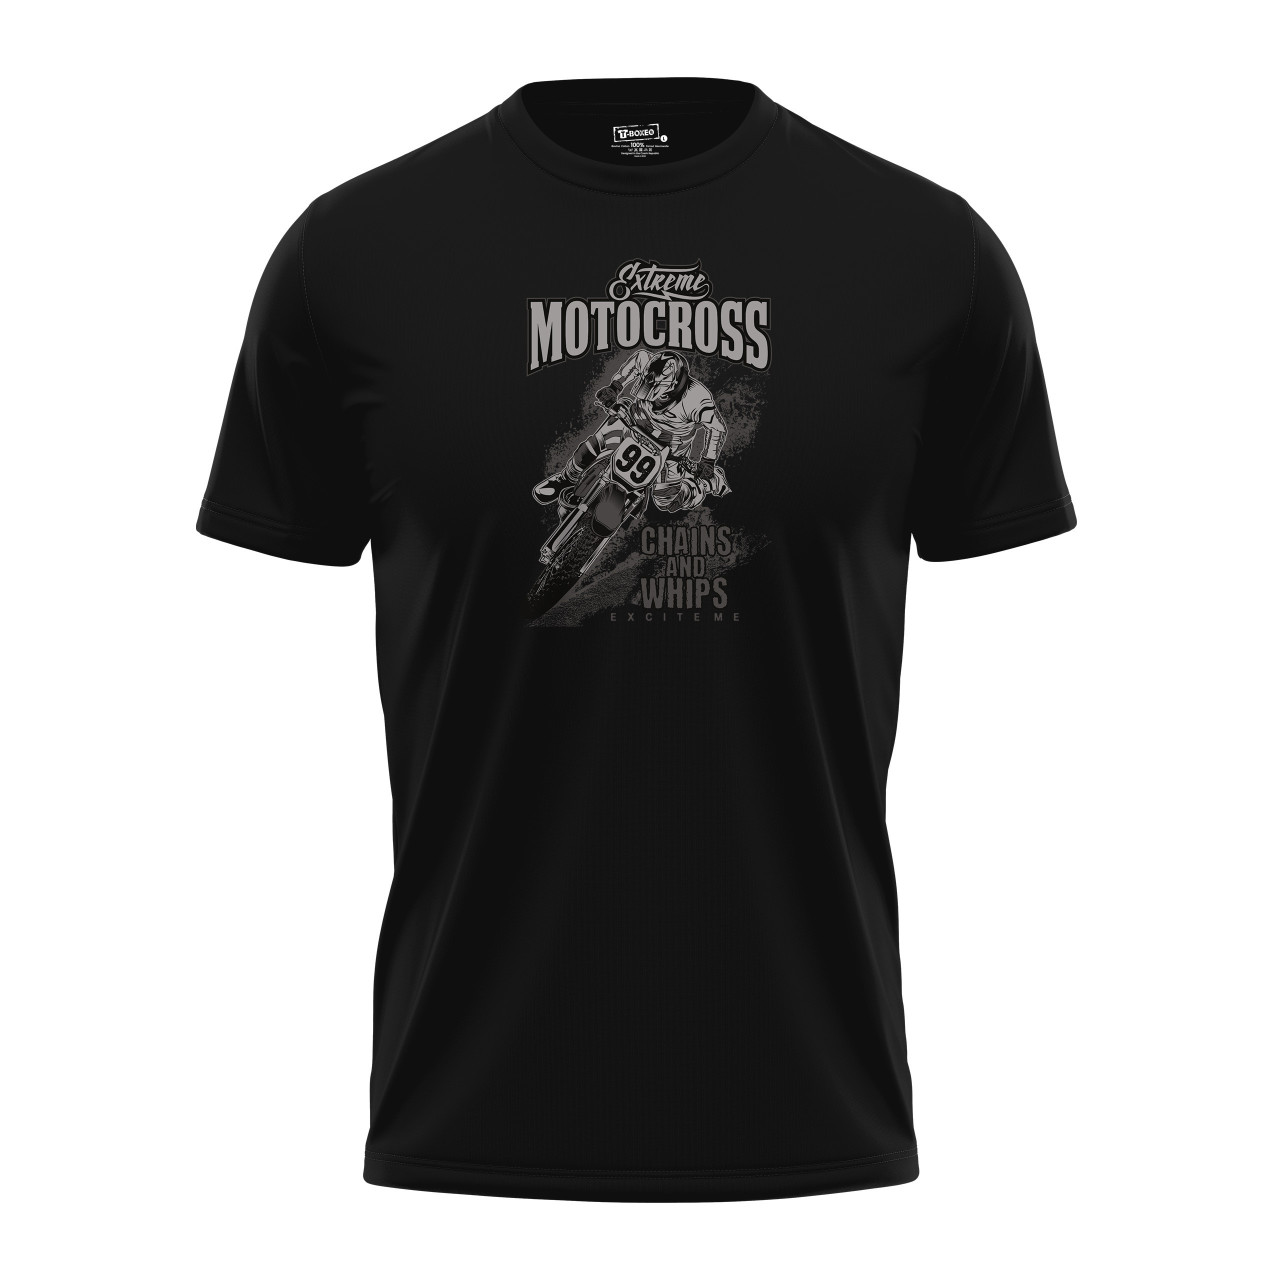 Pánské tričko s potiskem “Extreme Motocross, černobílé"